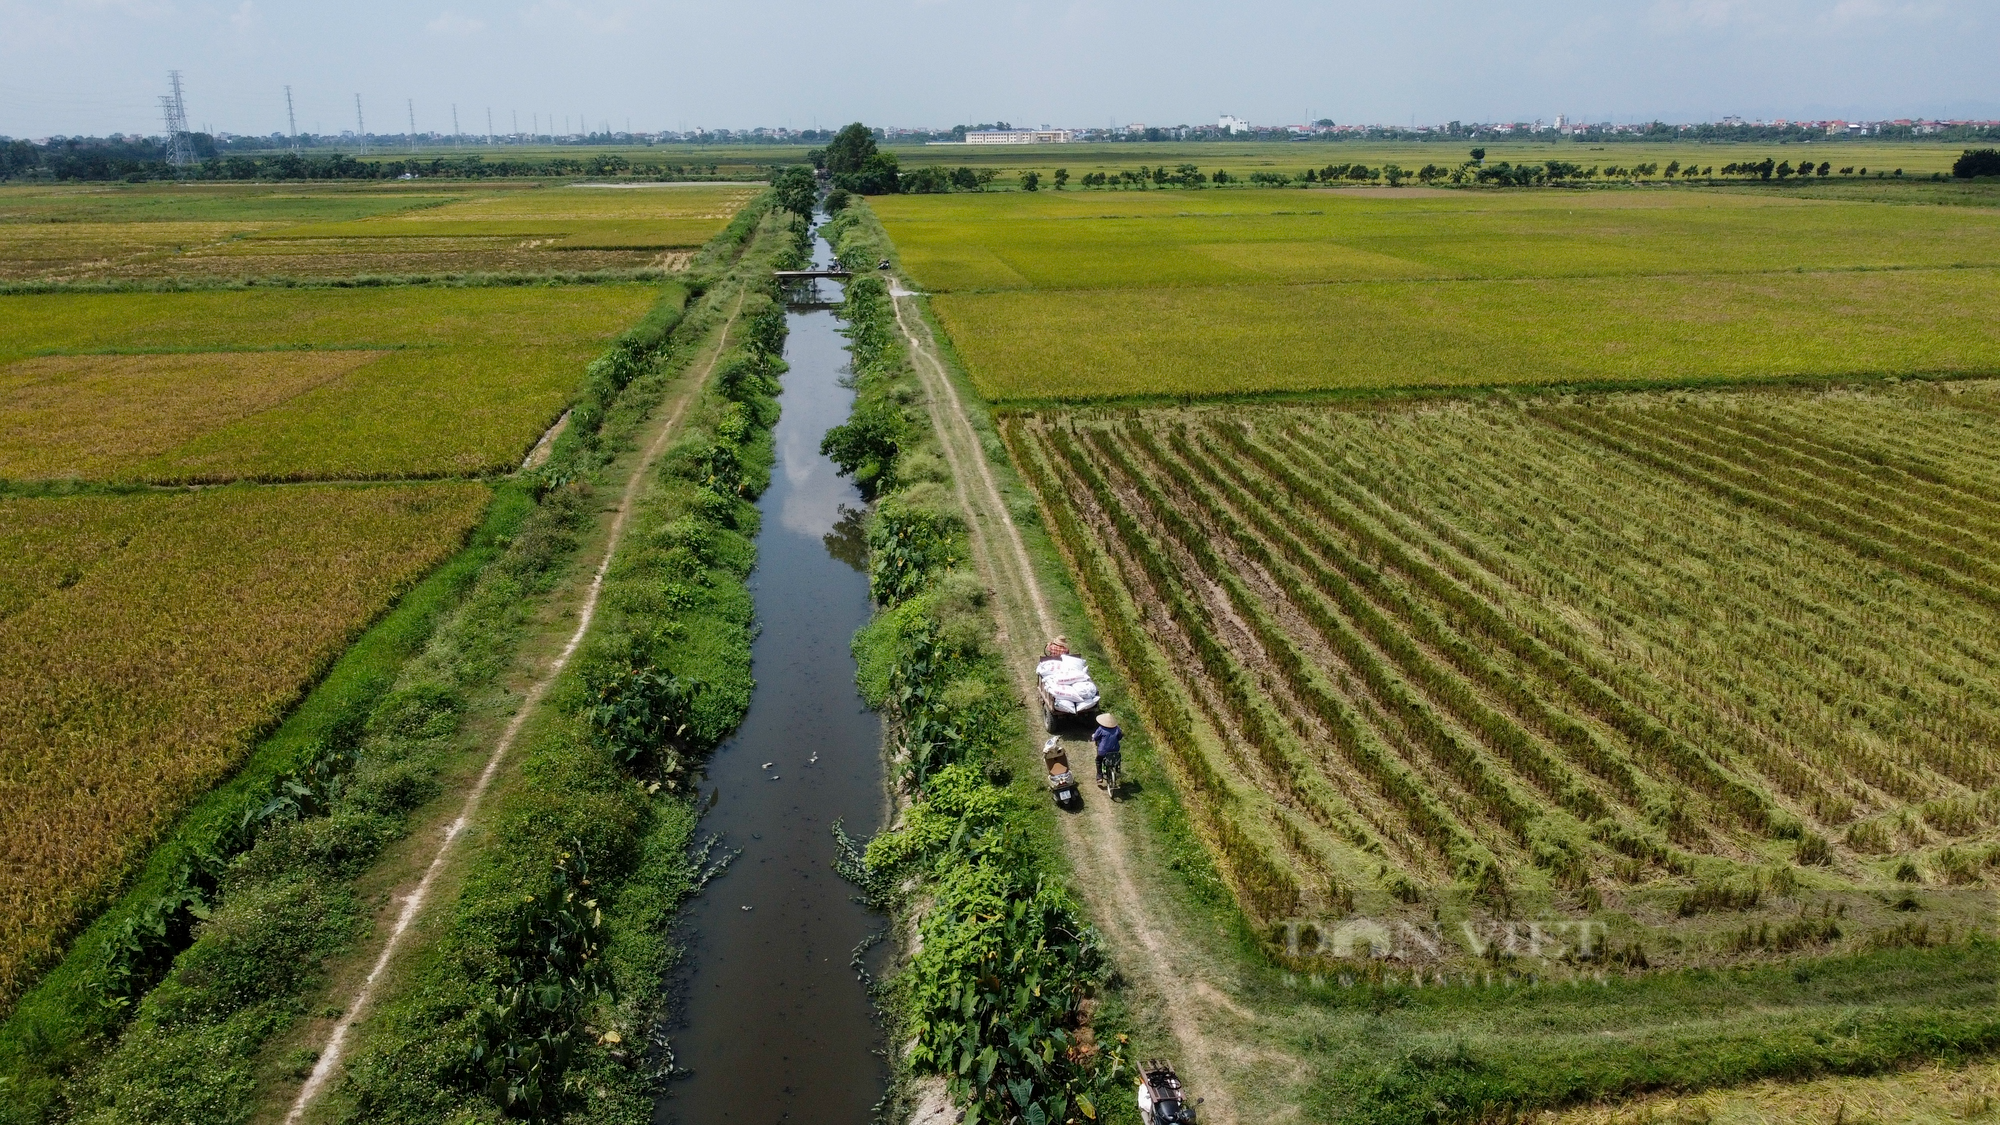 Nước thải và rác làm ảnh hưởng năng suất lúa của nông dân ngoại thành Hà Nội - Ảnh 2.